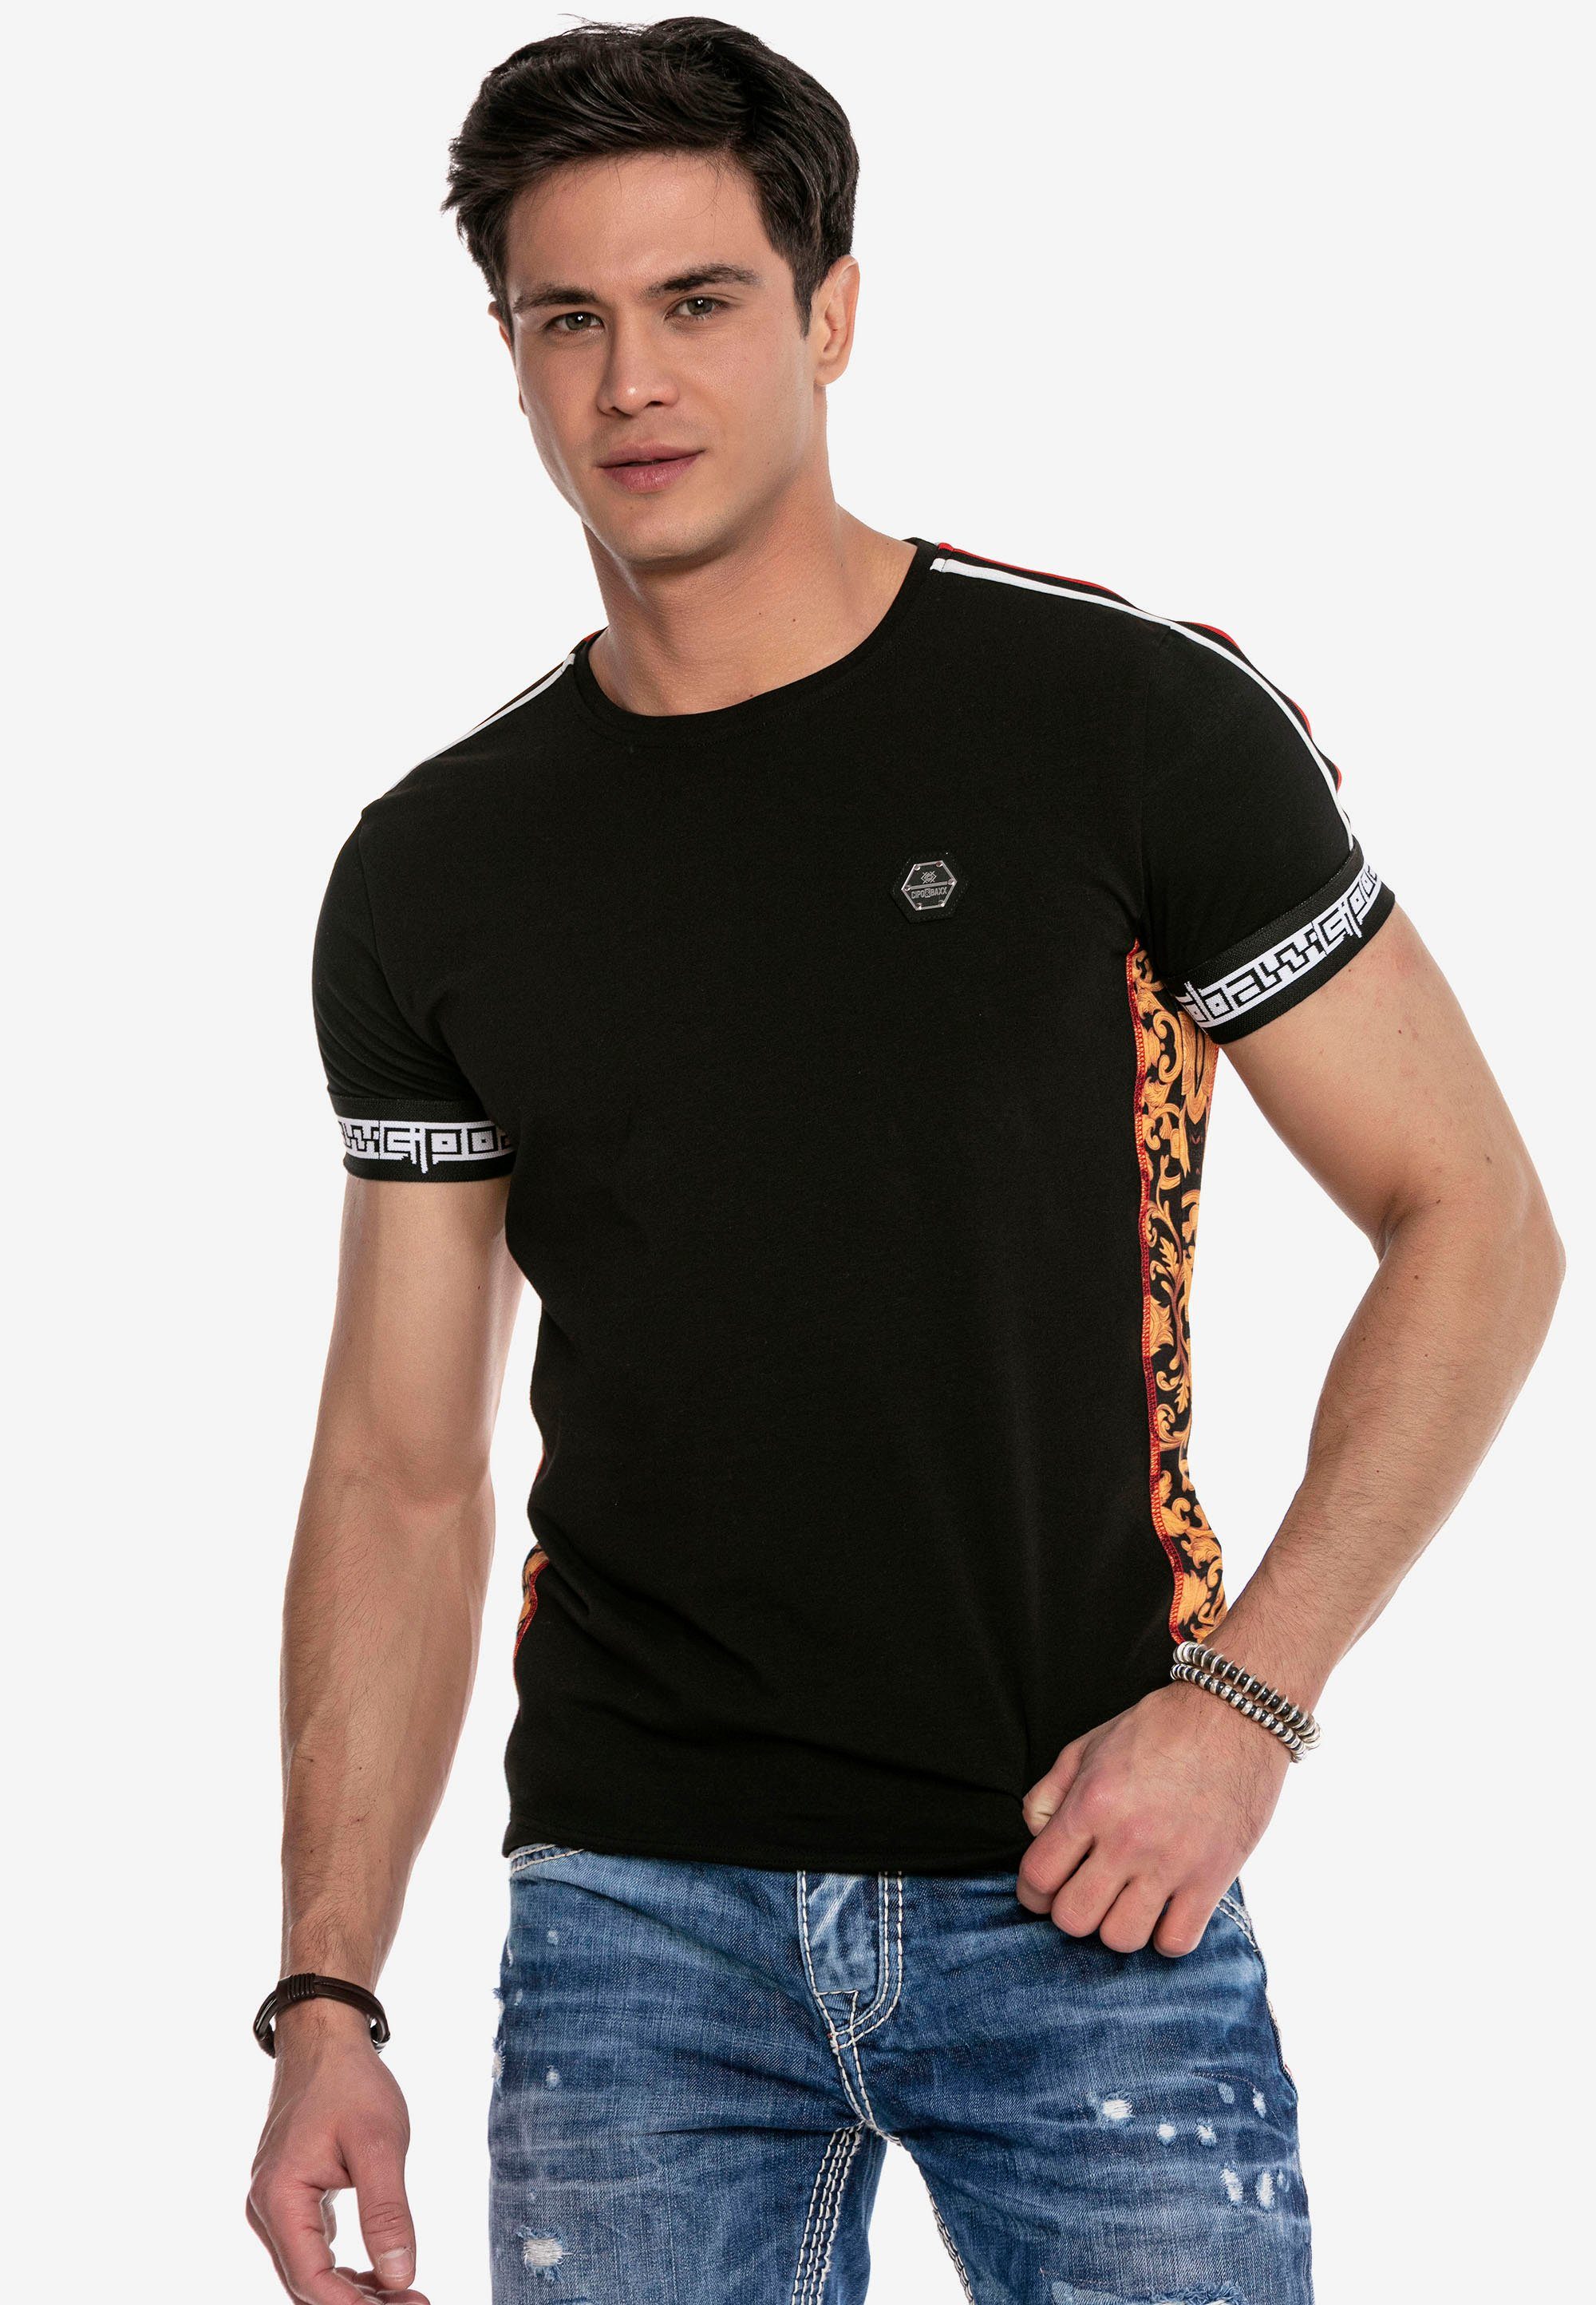 & schwarz sportlichen Design T-Shirt Baxx im Cipo